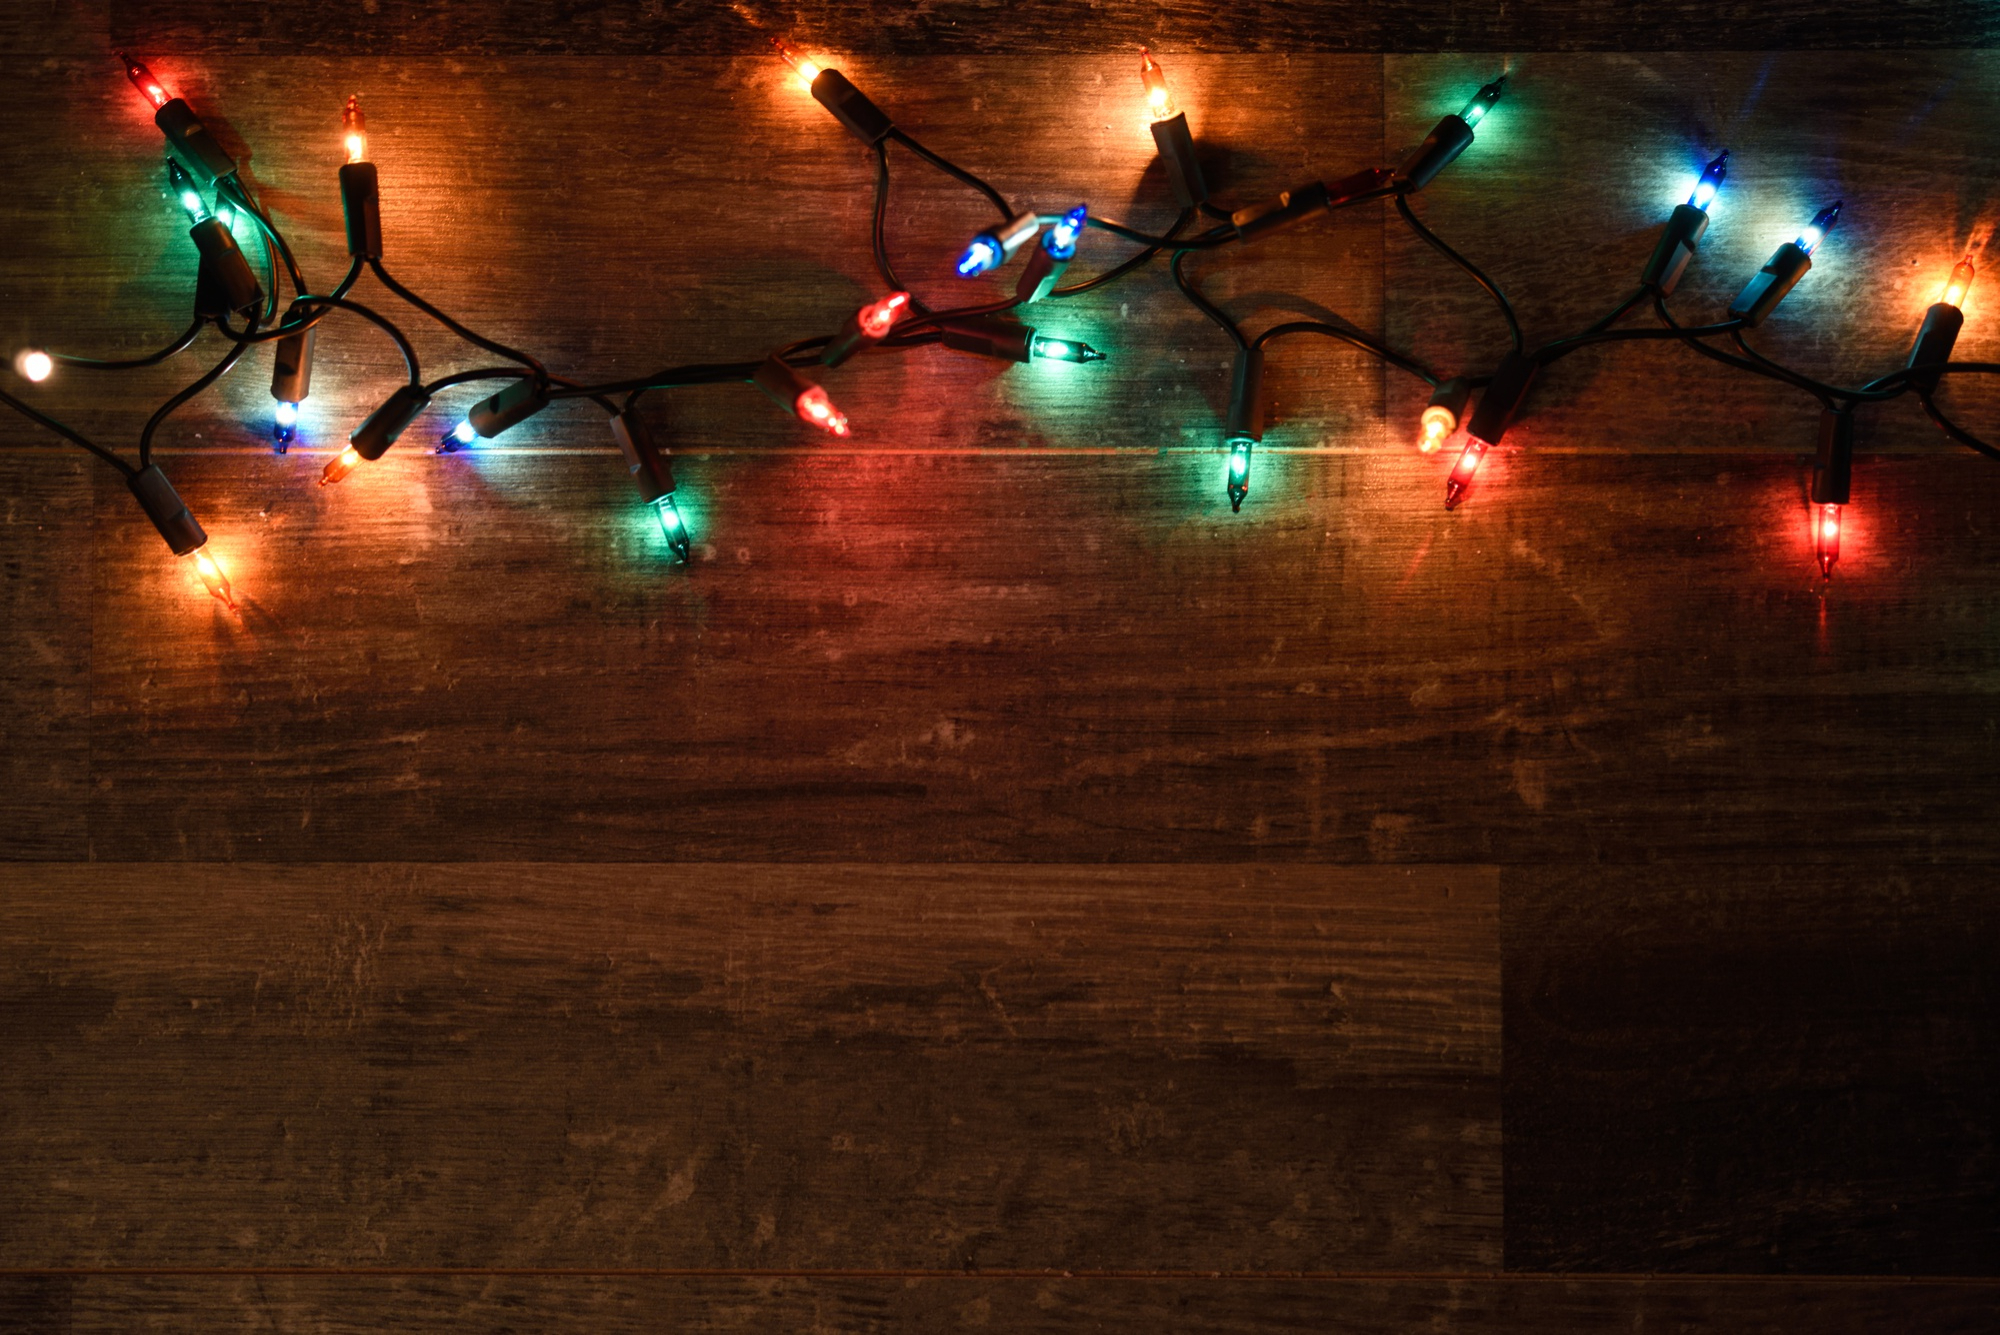 As luzinhas de Natal encantam e enfeitam, mas cuidado na hora de fazer a instalação! / GB Imagem